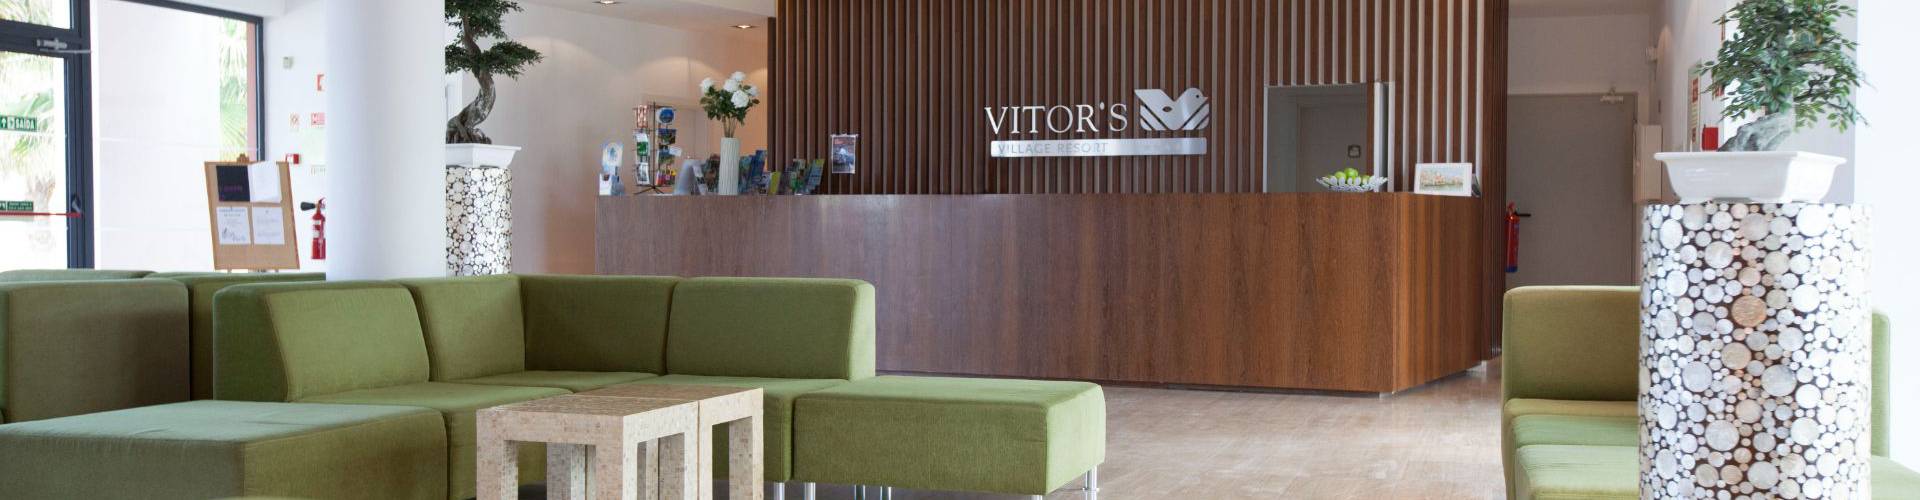 Vitors hotels -  - Contact